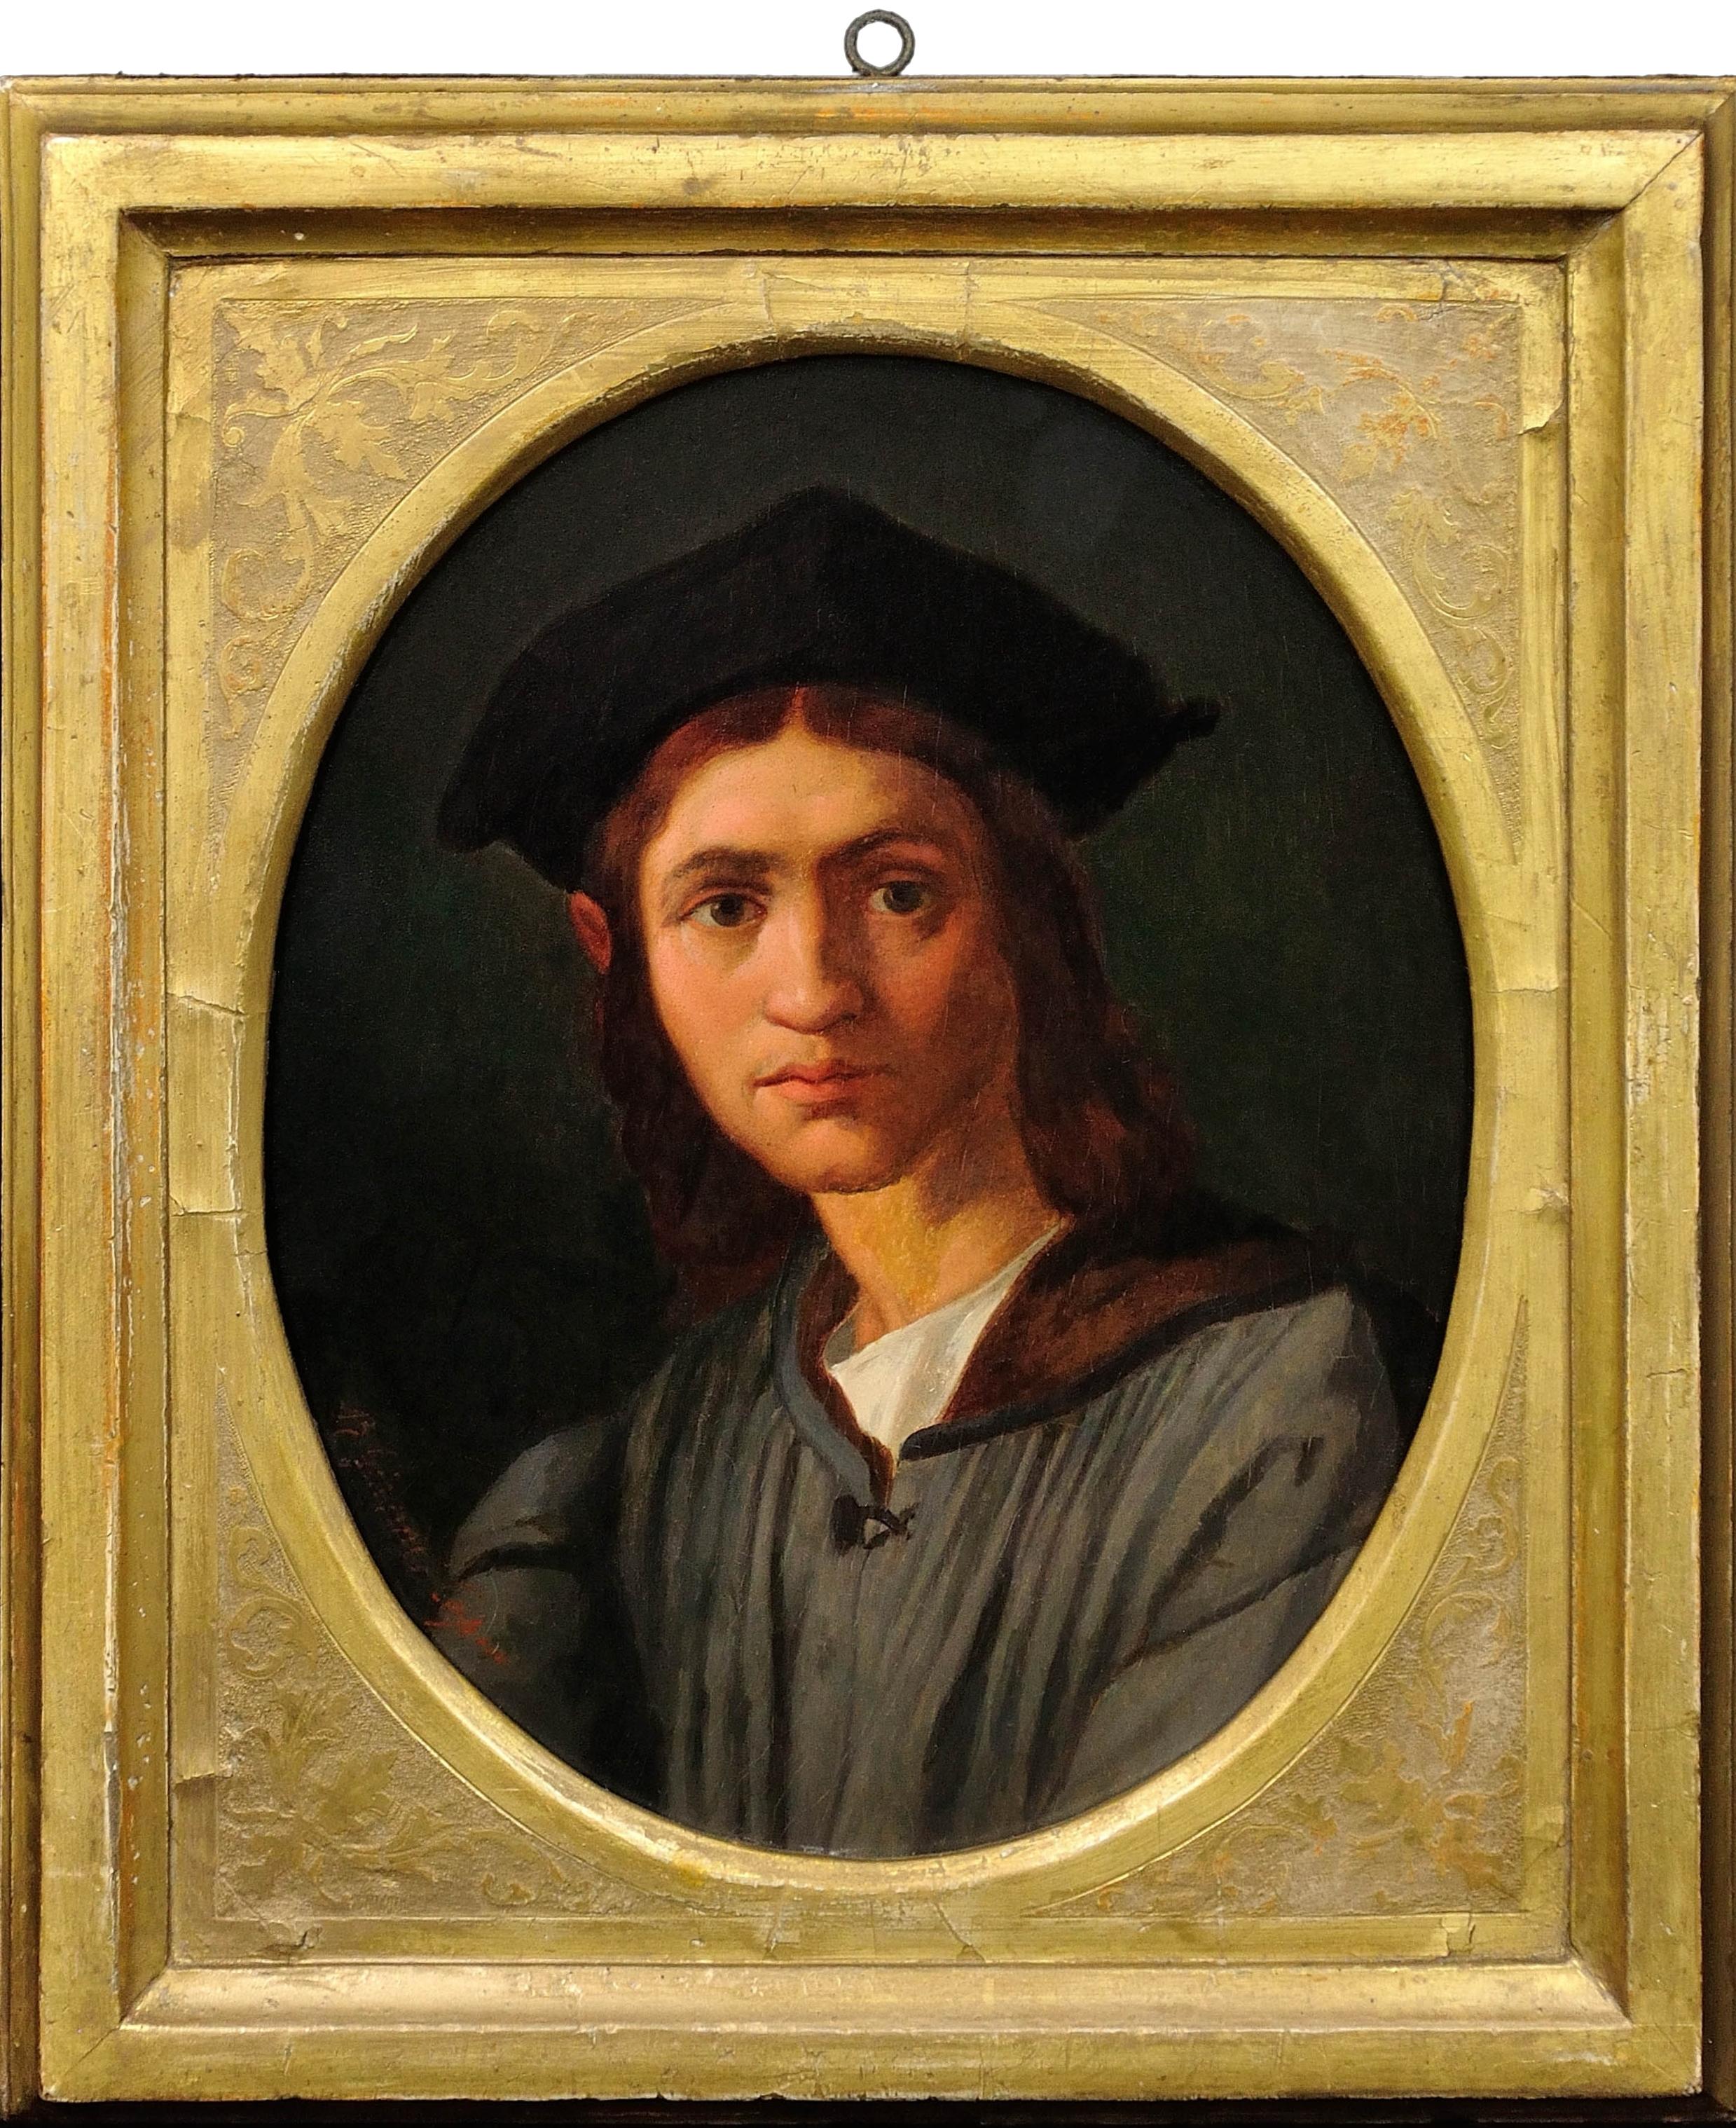 after Andrea del Sarto circa 1863. Portrait of Baccio Bandinelli. Uffizi Gallery